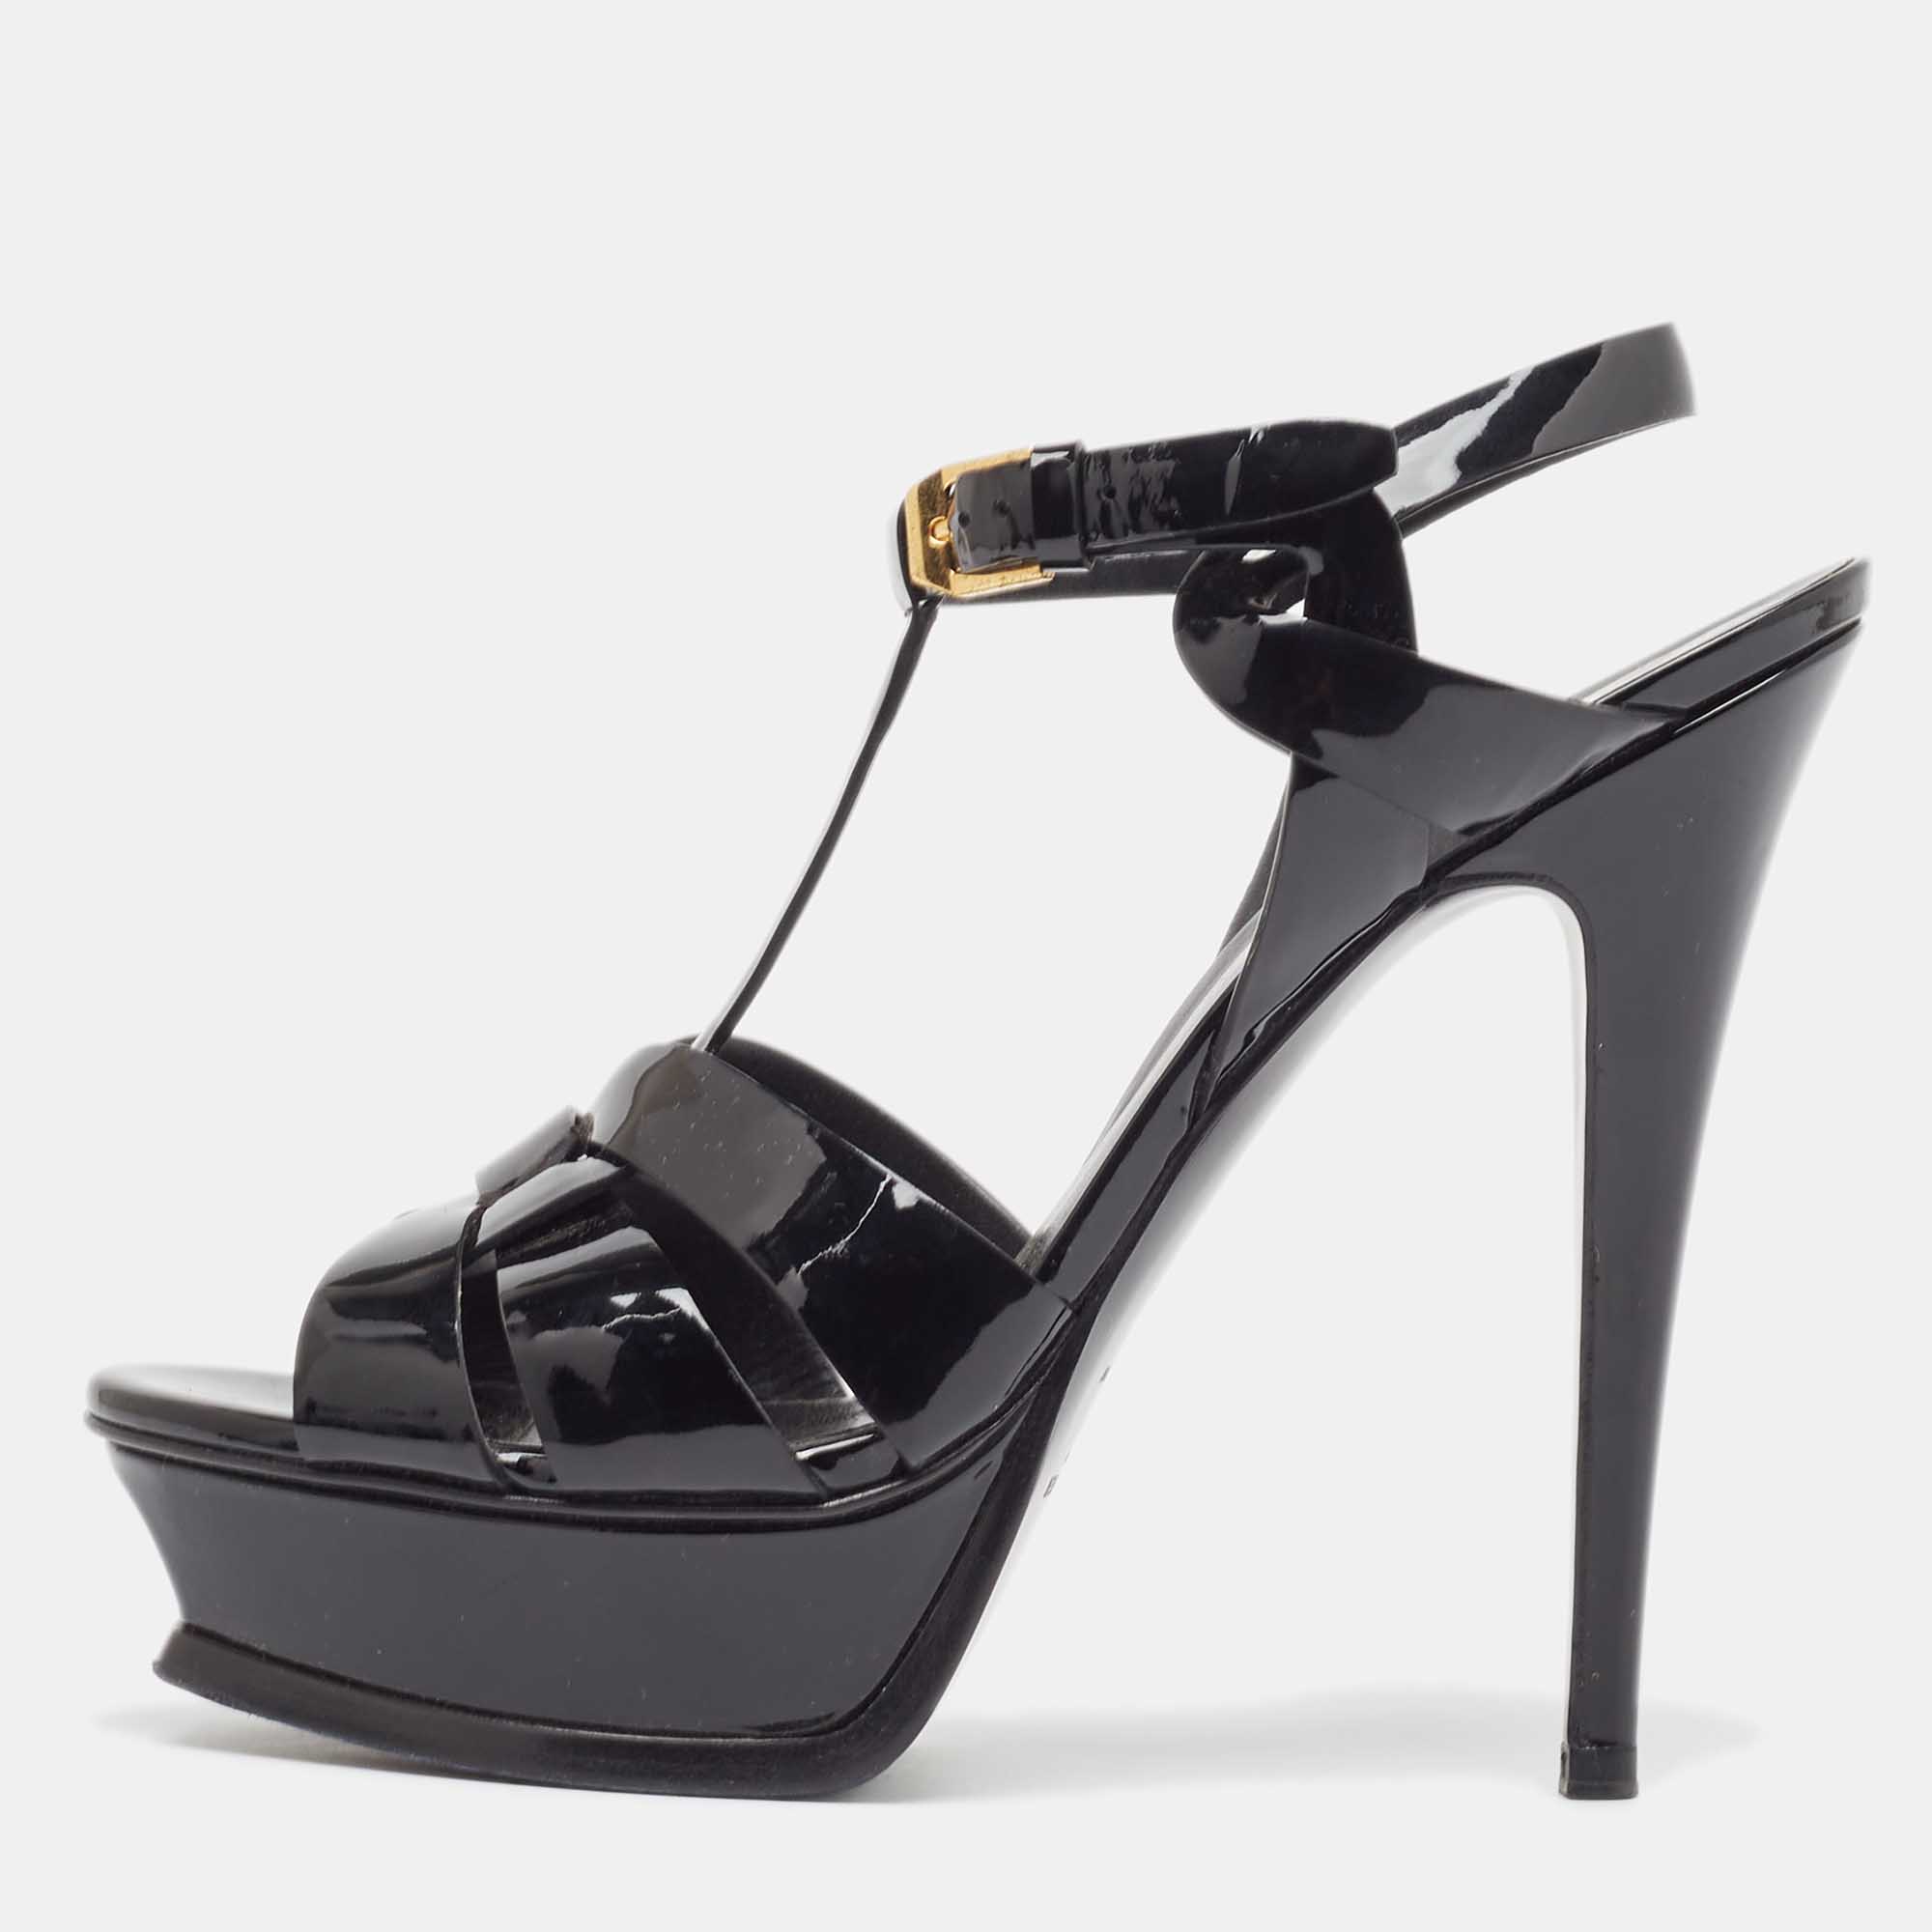 Saint laurent paris saint laurent black patent tribute sandals size 38